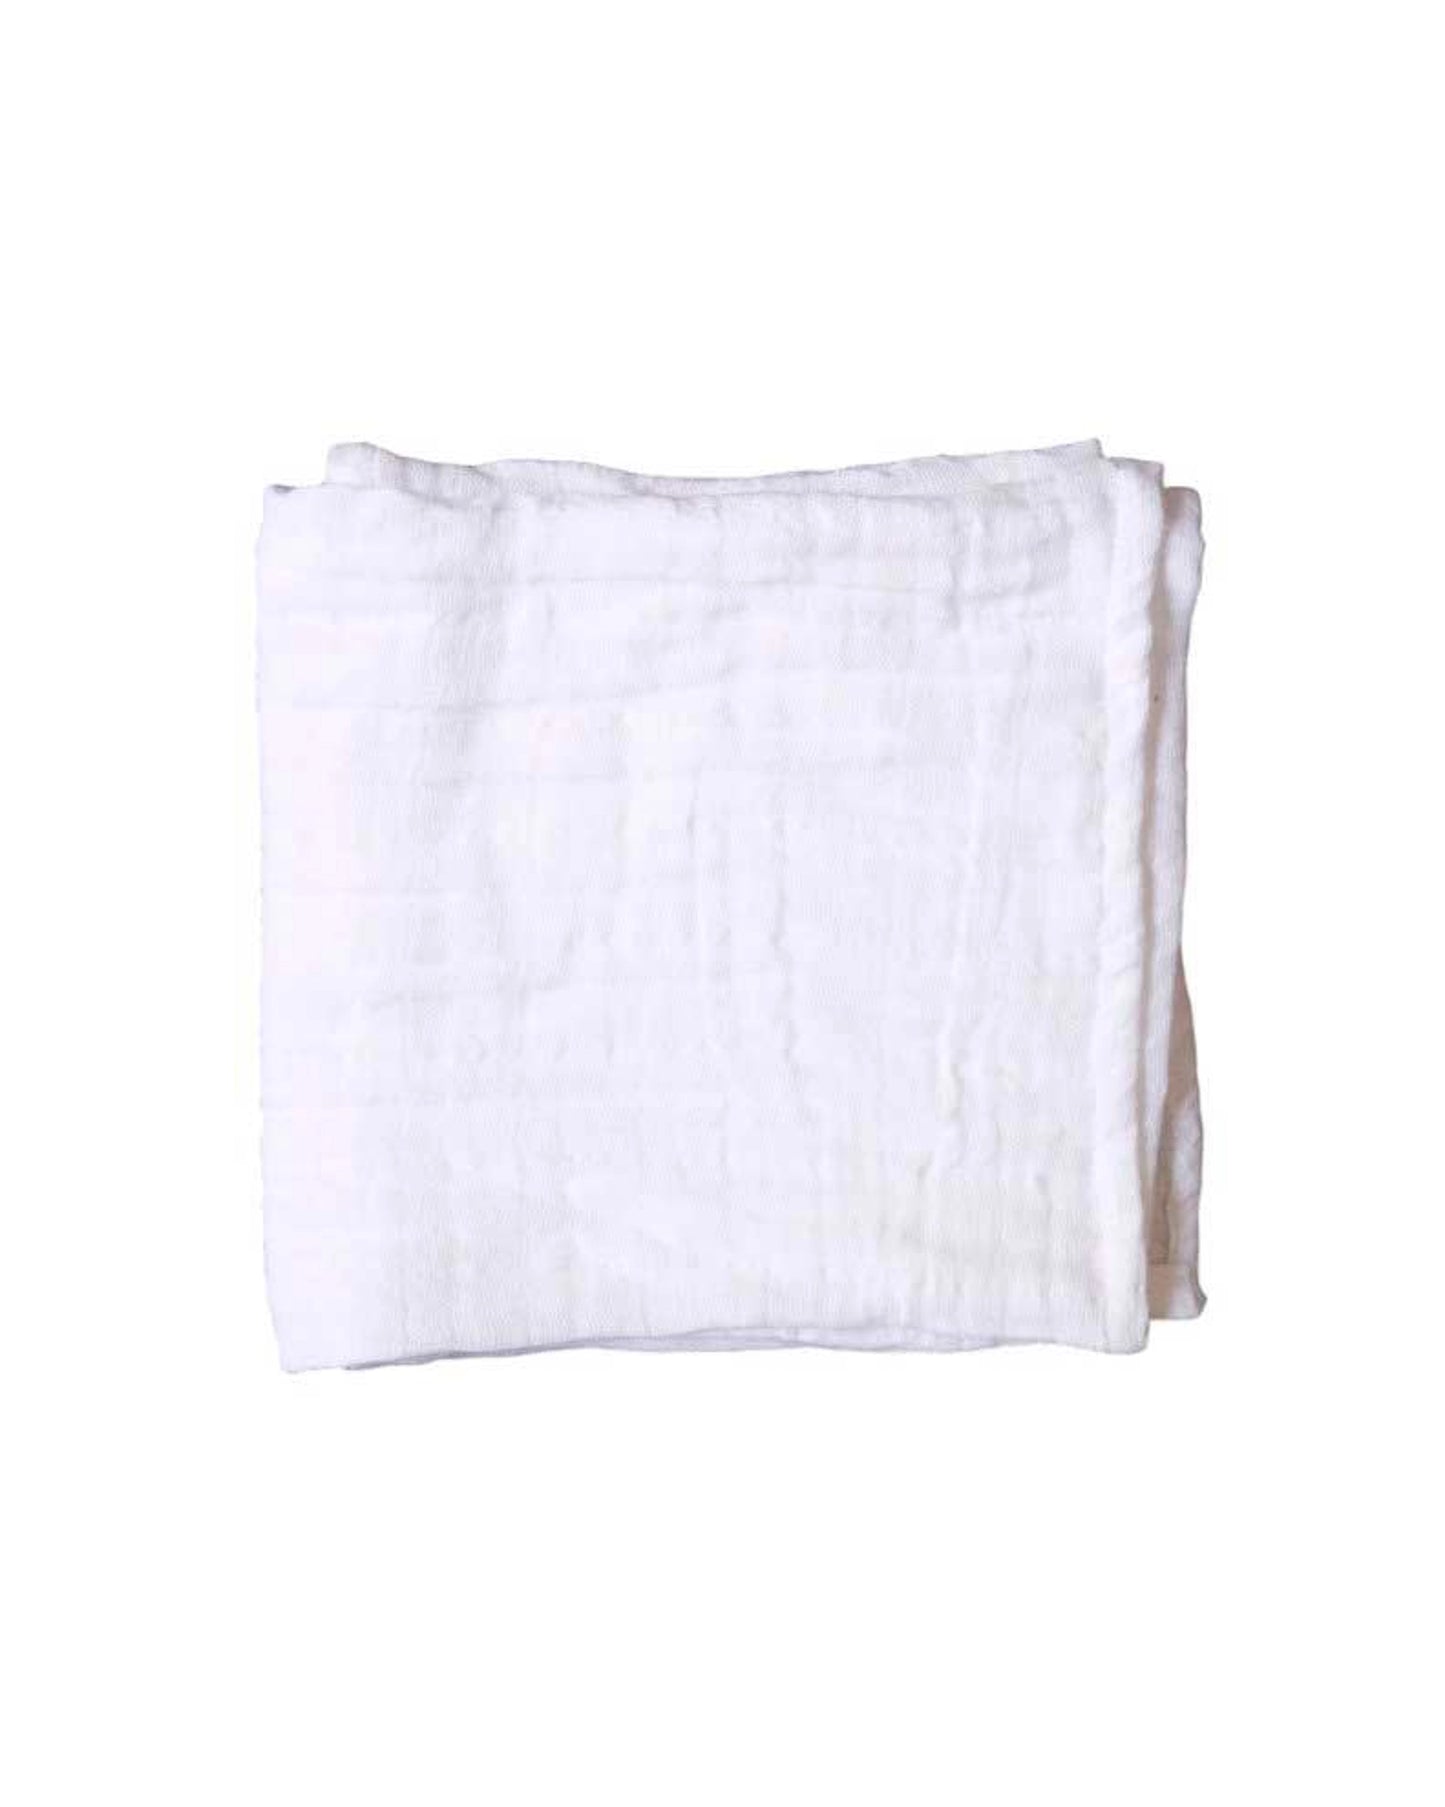 Petit lange en mousseline de coton - Blanc - 60x60 cm